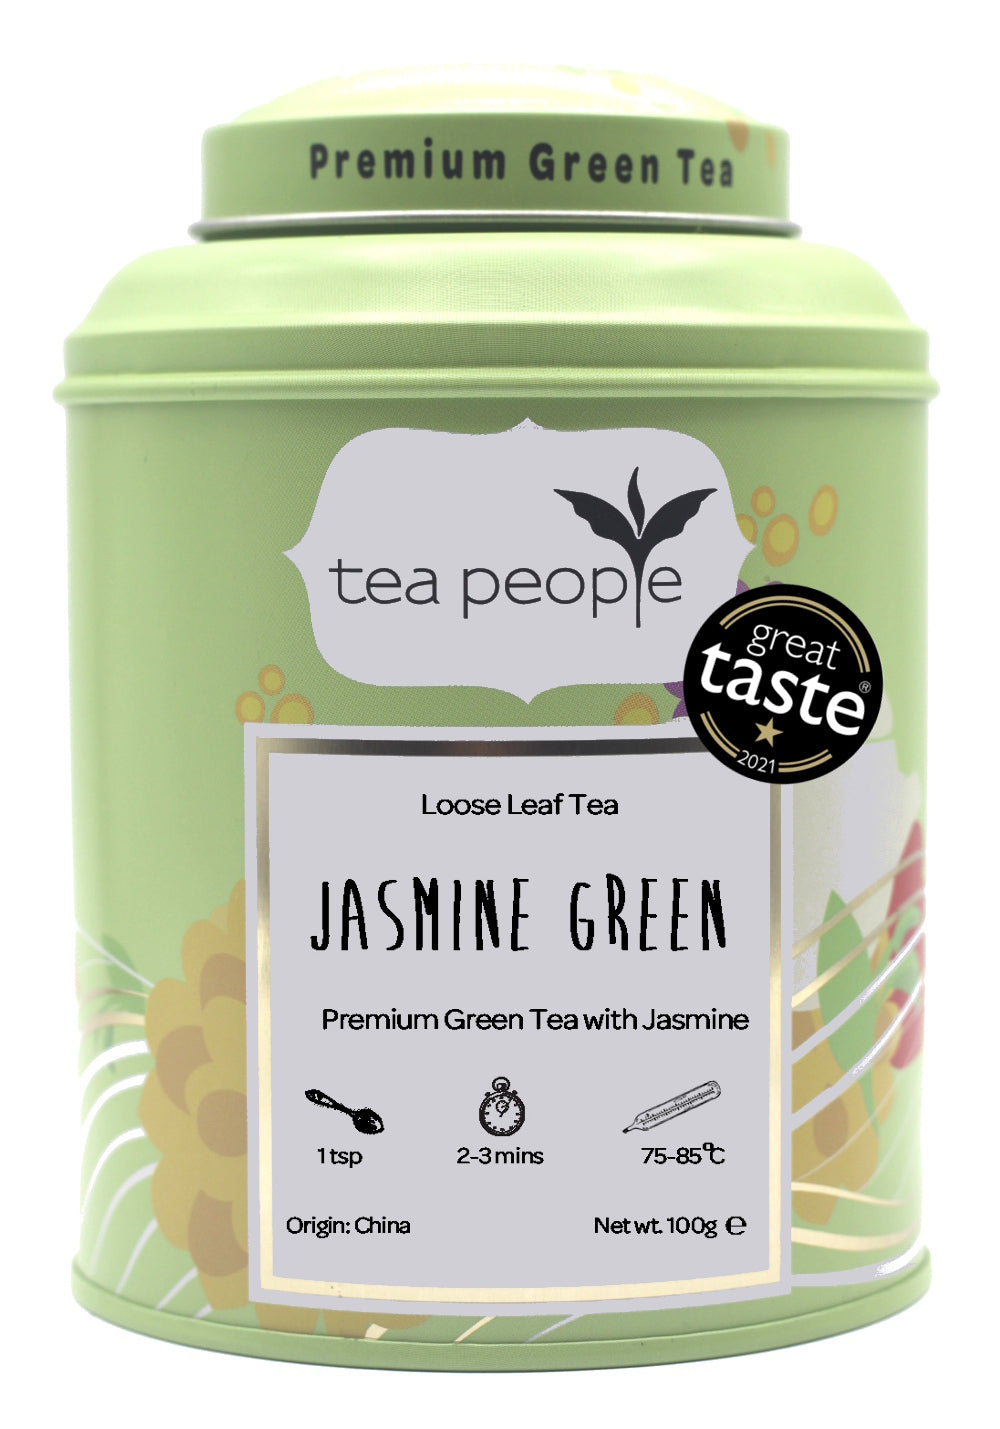 Jasmine Green - Loose Green Tea - 100g Tin Caddy